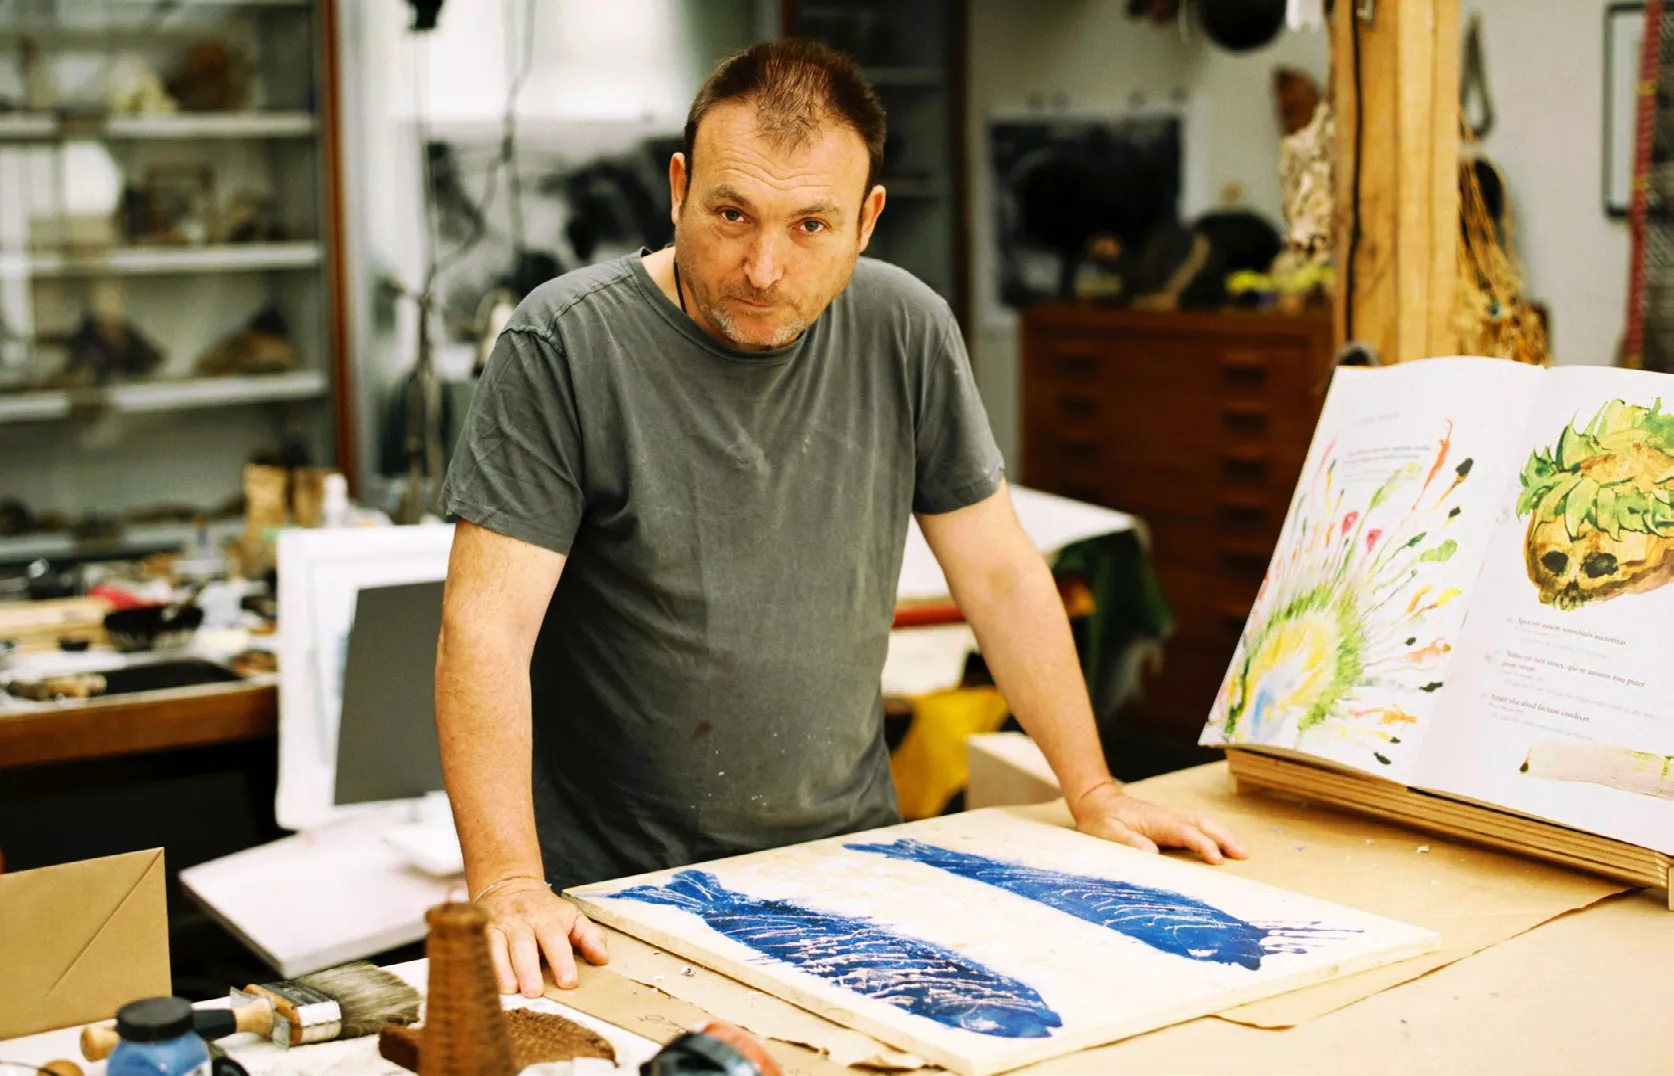 Miquel Barceló al seu taller de París. A la imatge, una de les pàgines dobles del llibre i el dibuix dels peixos que decora la caixa de fusta que també fa de faristol